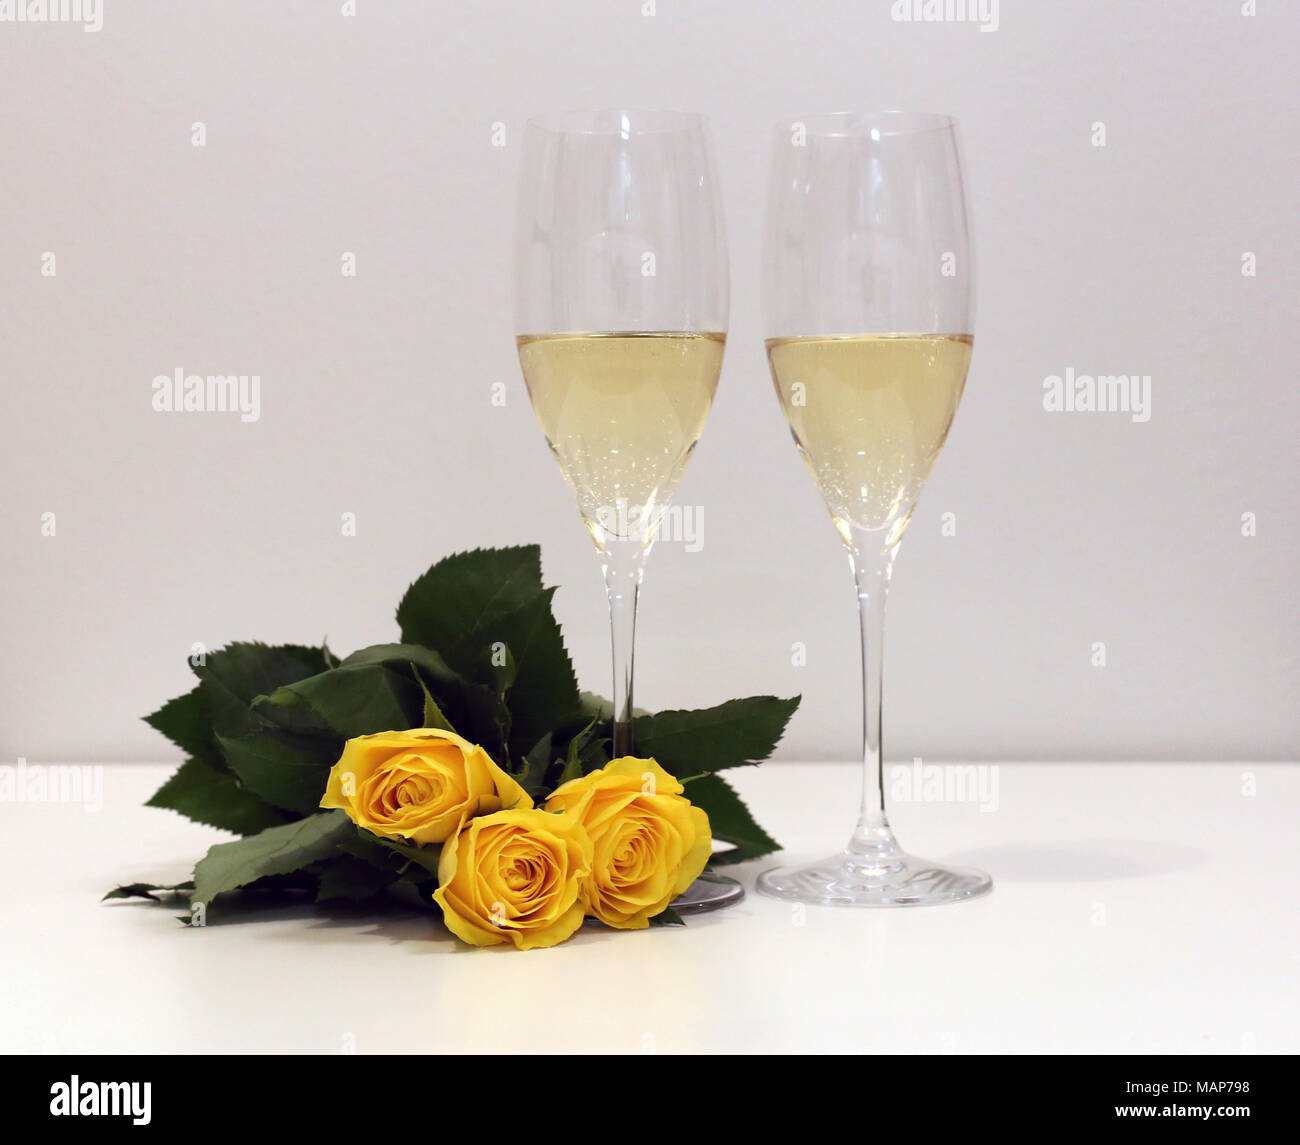 Zwei Gläser Champagner/Sekt mit drei gelbe Rosen. Perfekte still life Foto für Frühjahr, Sommer oder jede Art von Feier. Stockfoto